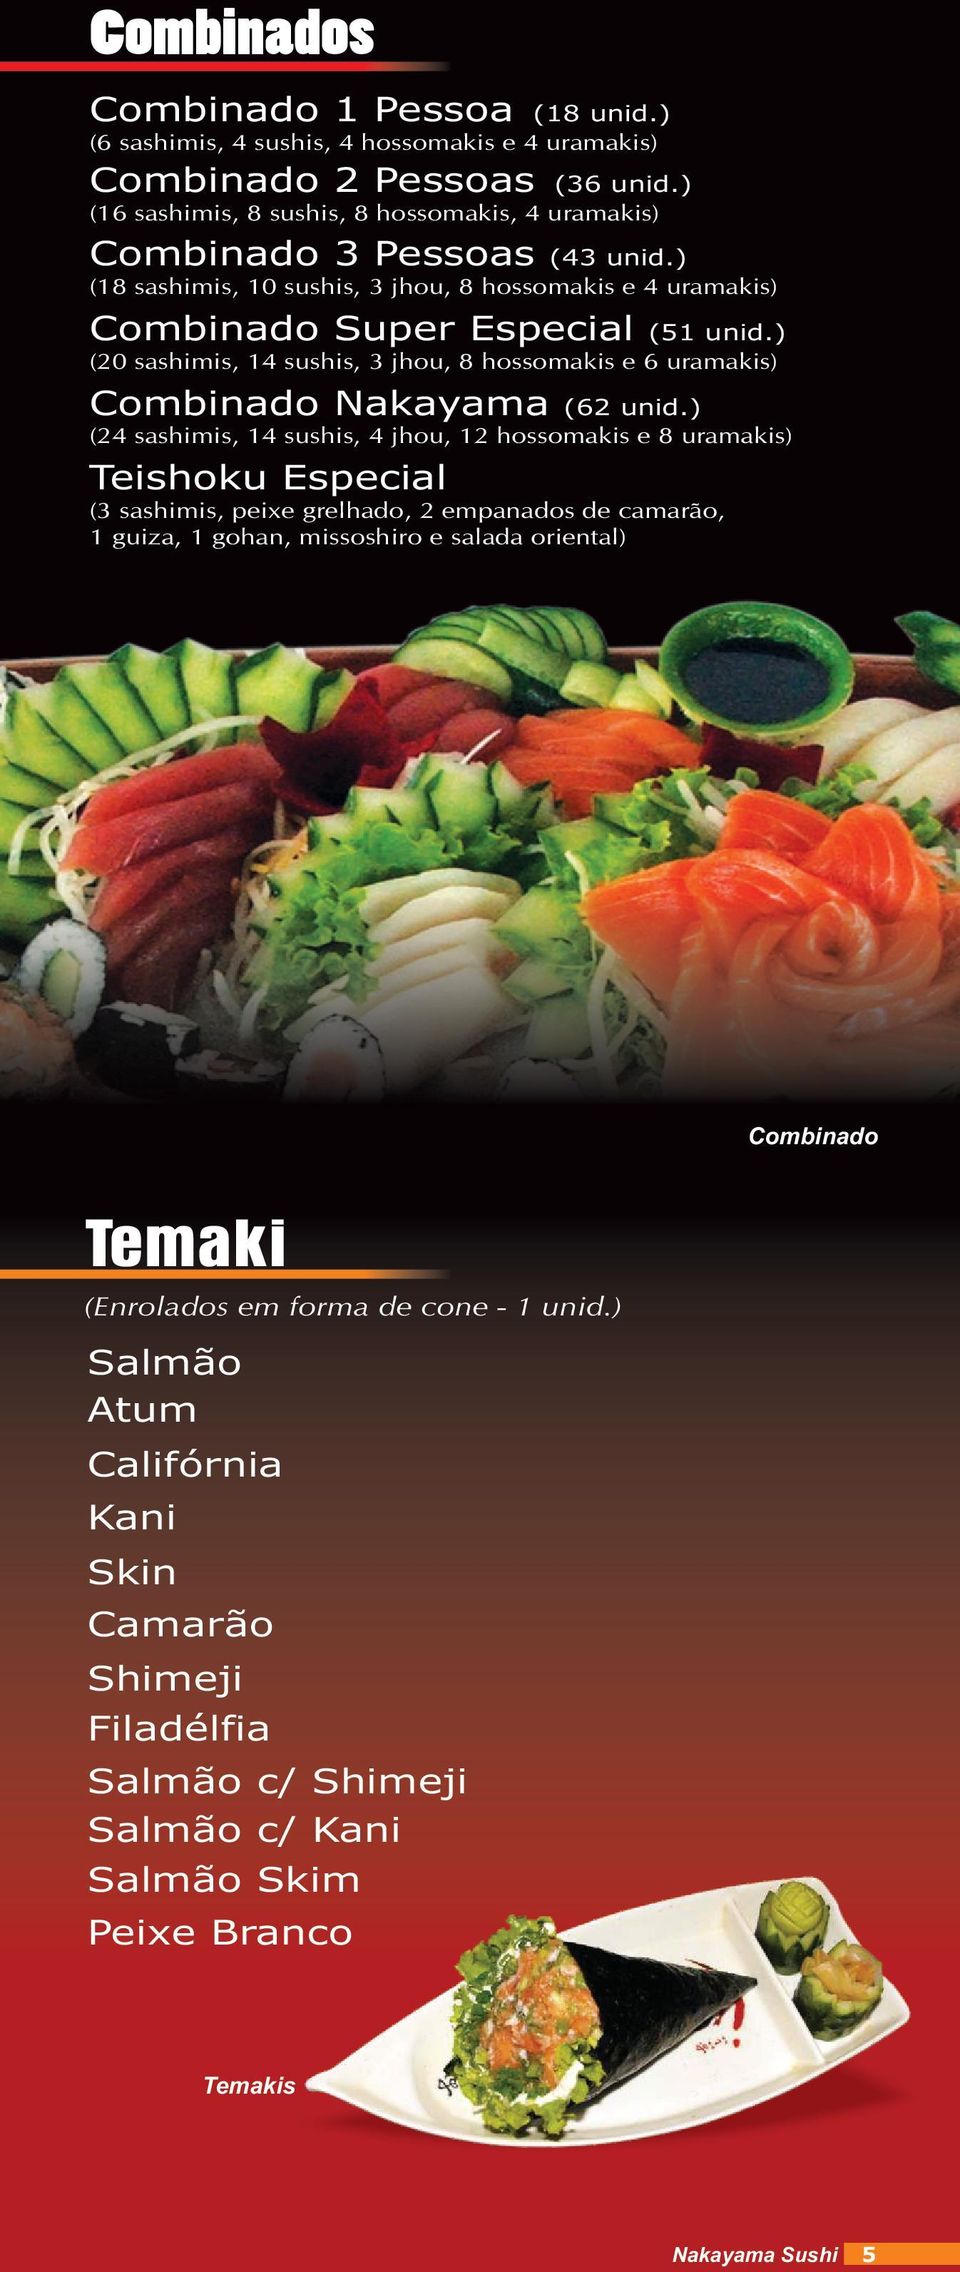 ) (20 sashimis, 14 sushis, 3 jhou, 8 hossomakis e 6 uramakis) Combinado Nakayama (62 unid.